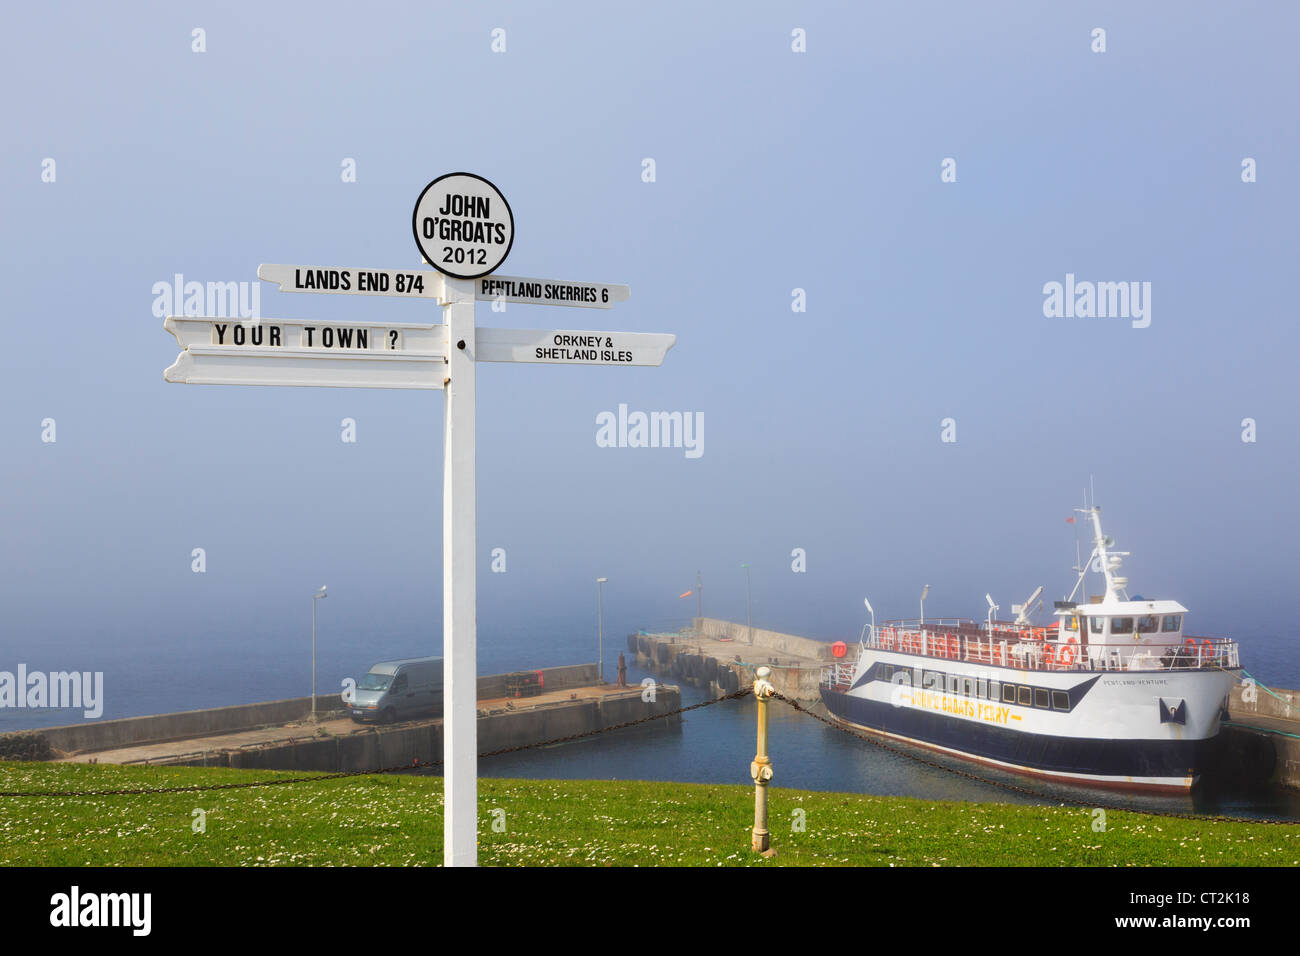 Scène avec panneau et ferry avec sea mist sur la côte nord-est à John O' Groats Caithness Scotland UK en Grande-Bretagne. Banque D'Images